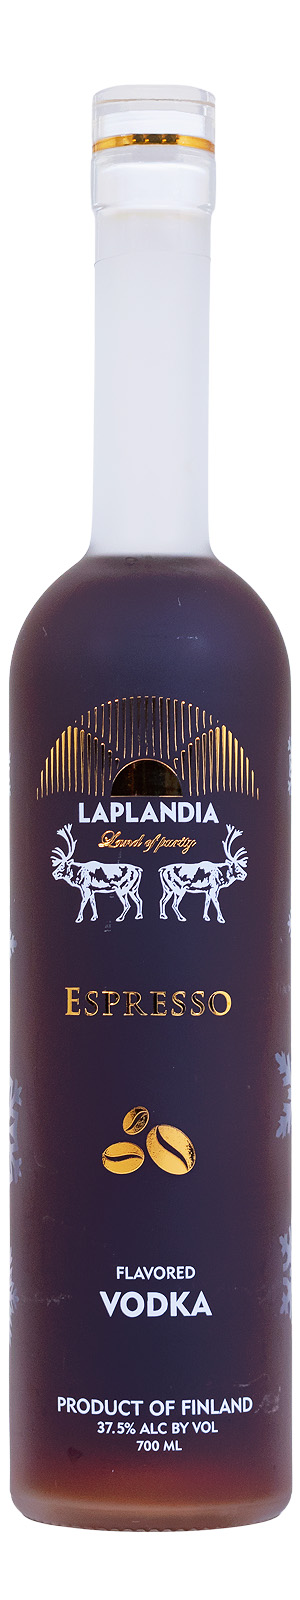 Laplandia Espresso Flavoured Vodka - 0,7L 37,5% vol